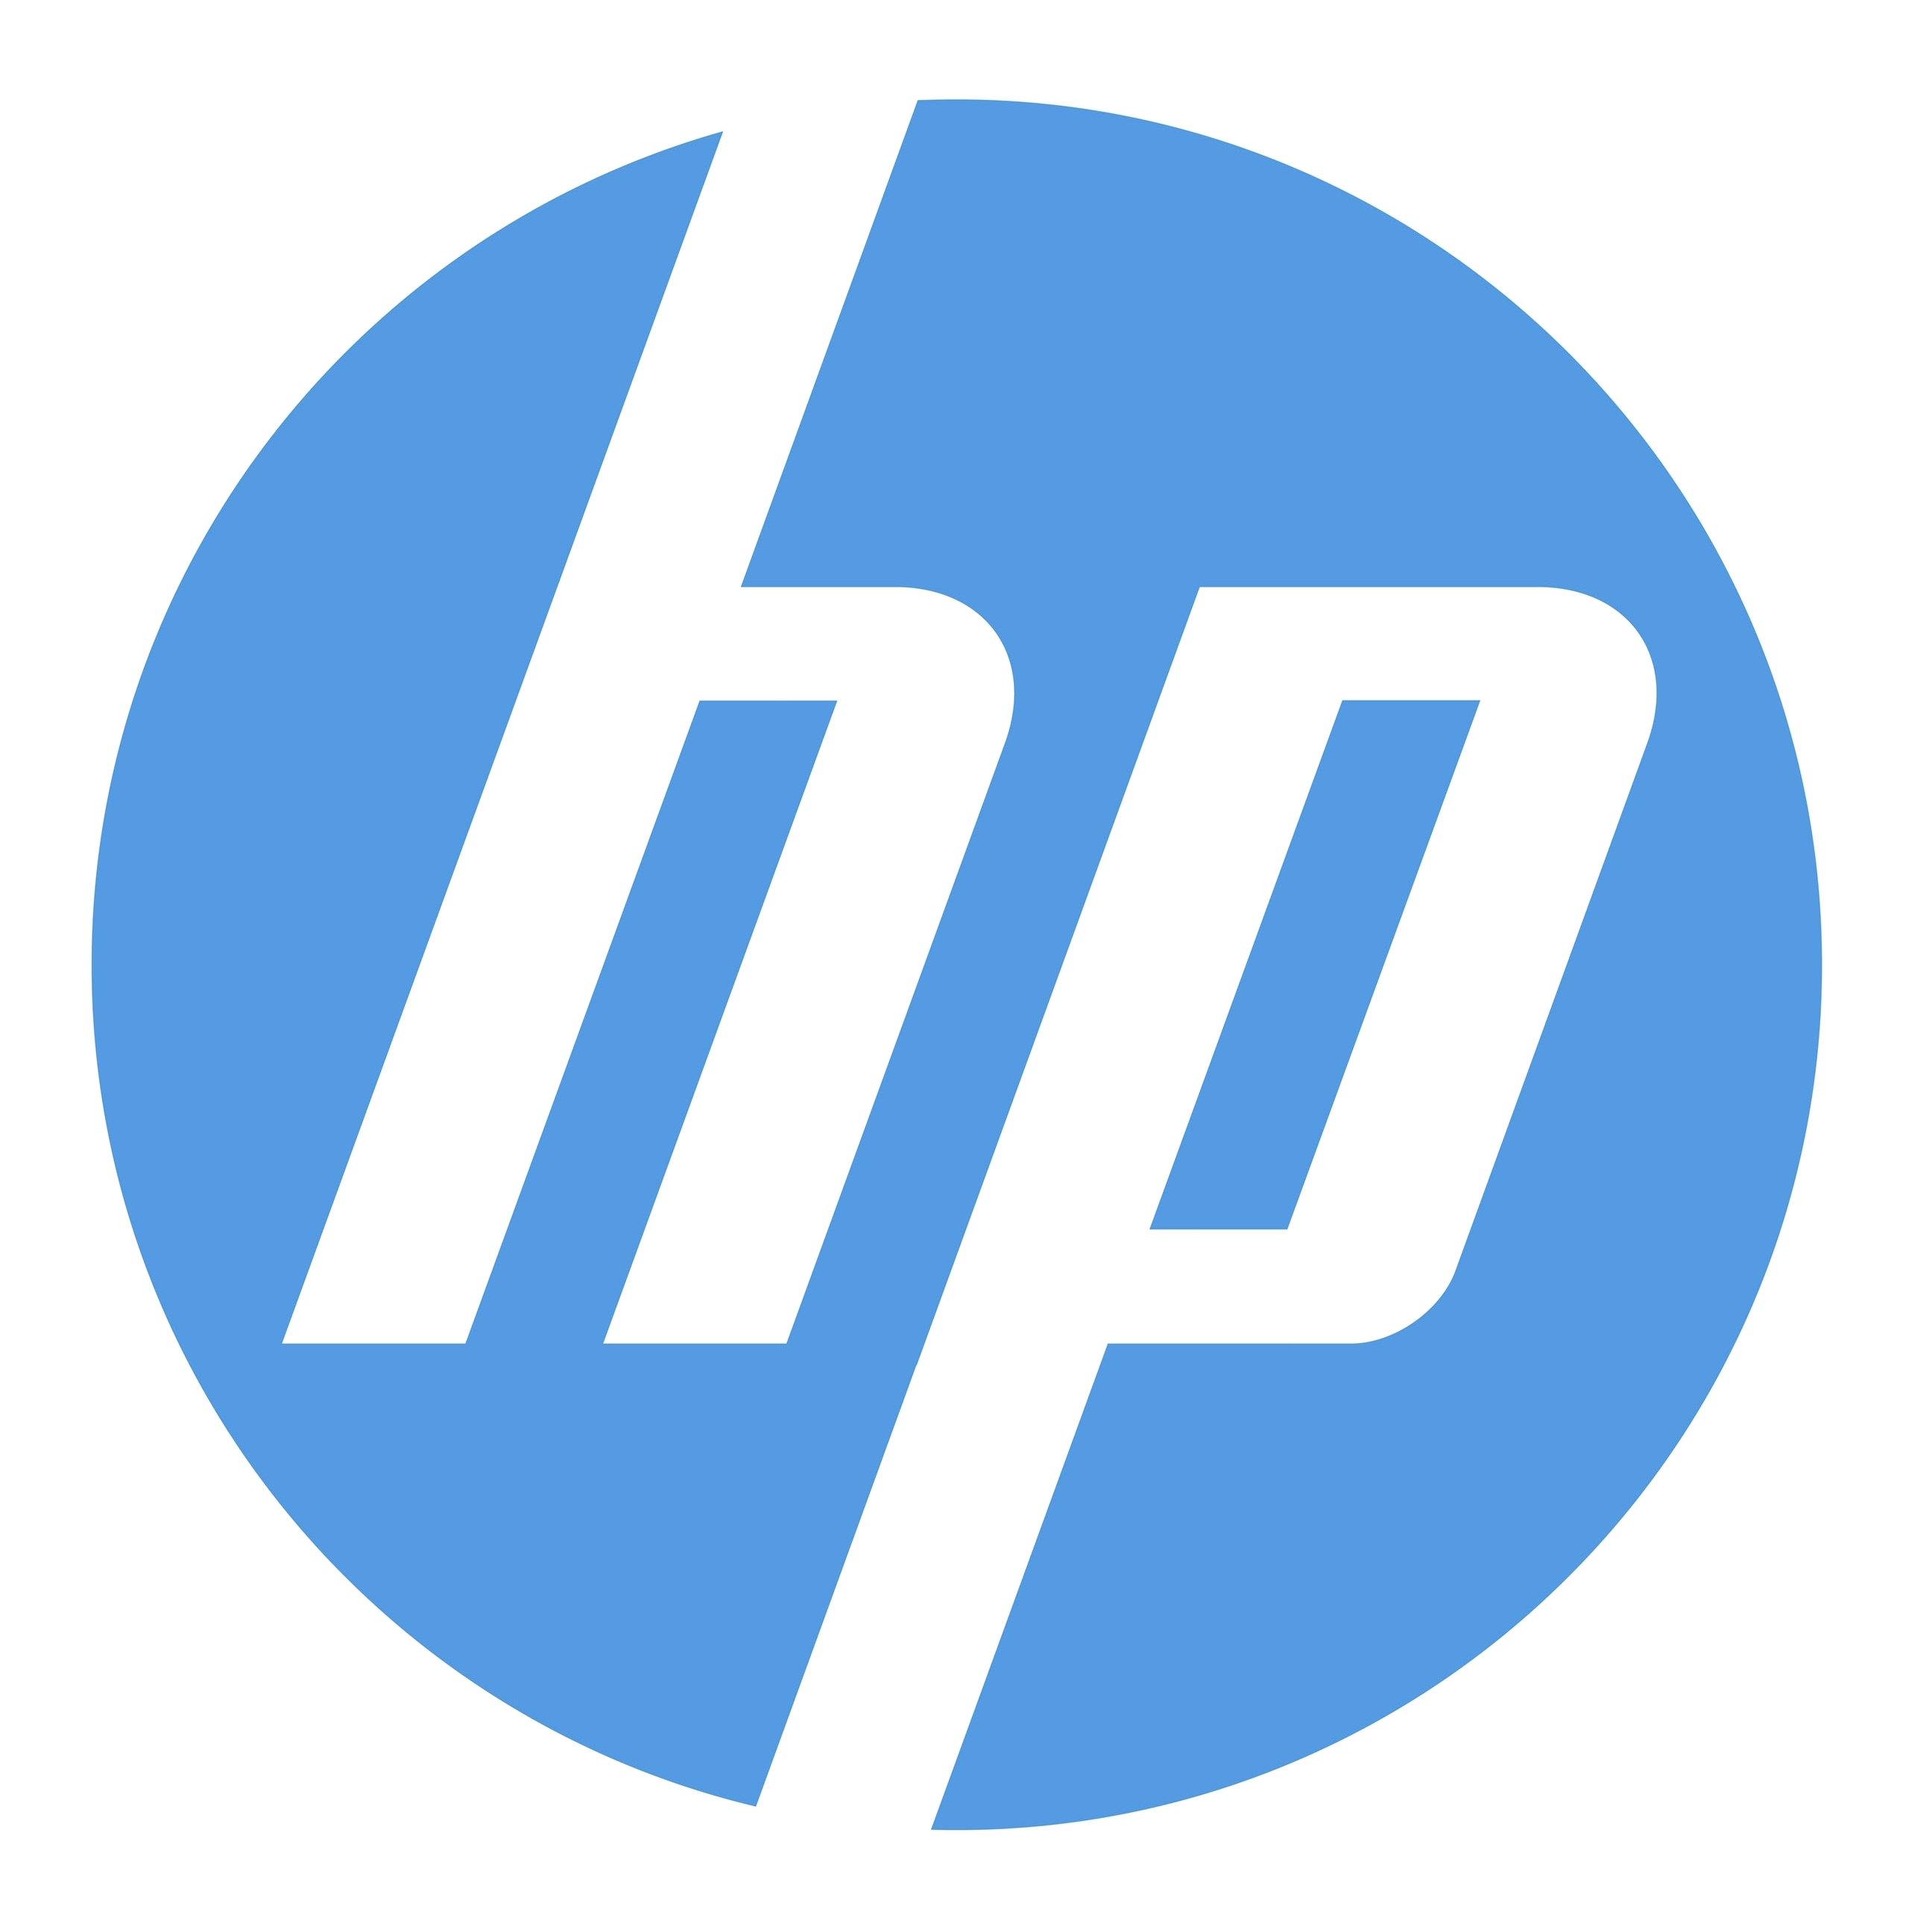 תמונת HP Logo PNG - PurePNG | ספריית תמונות CC0 PNG שקופה בחינם